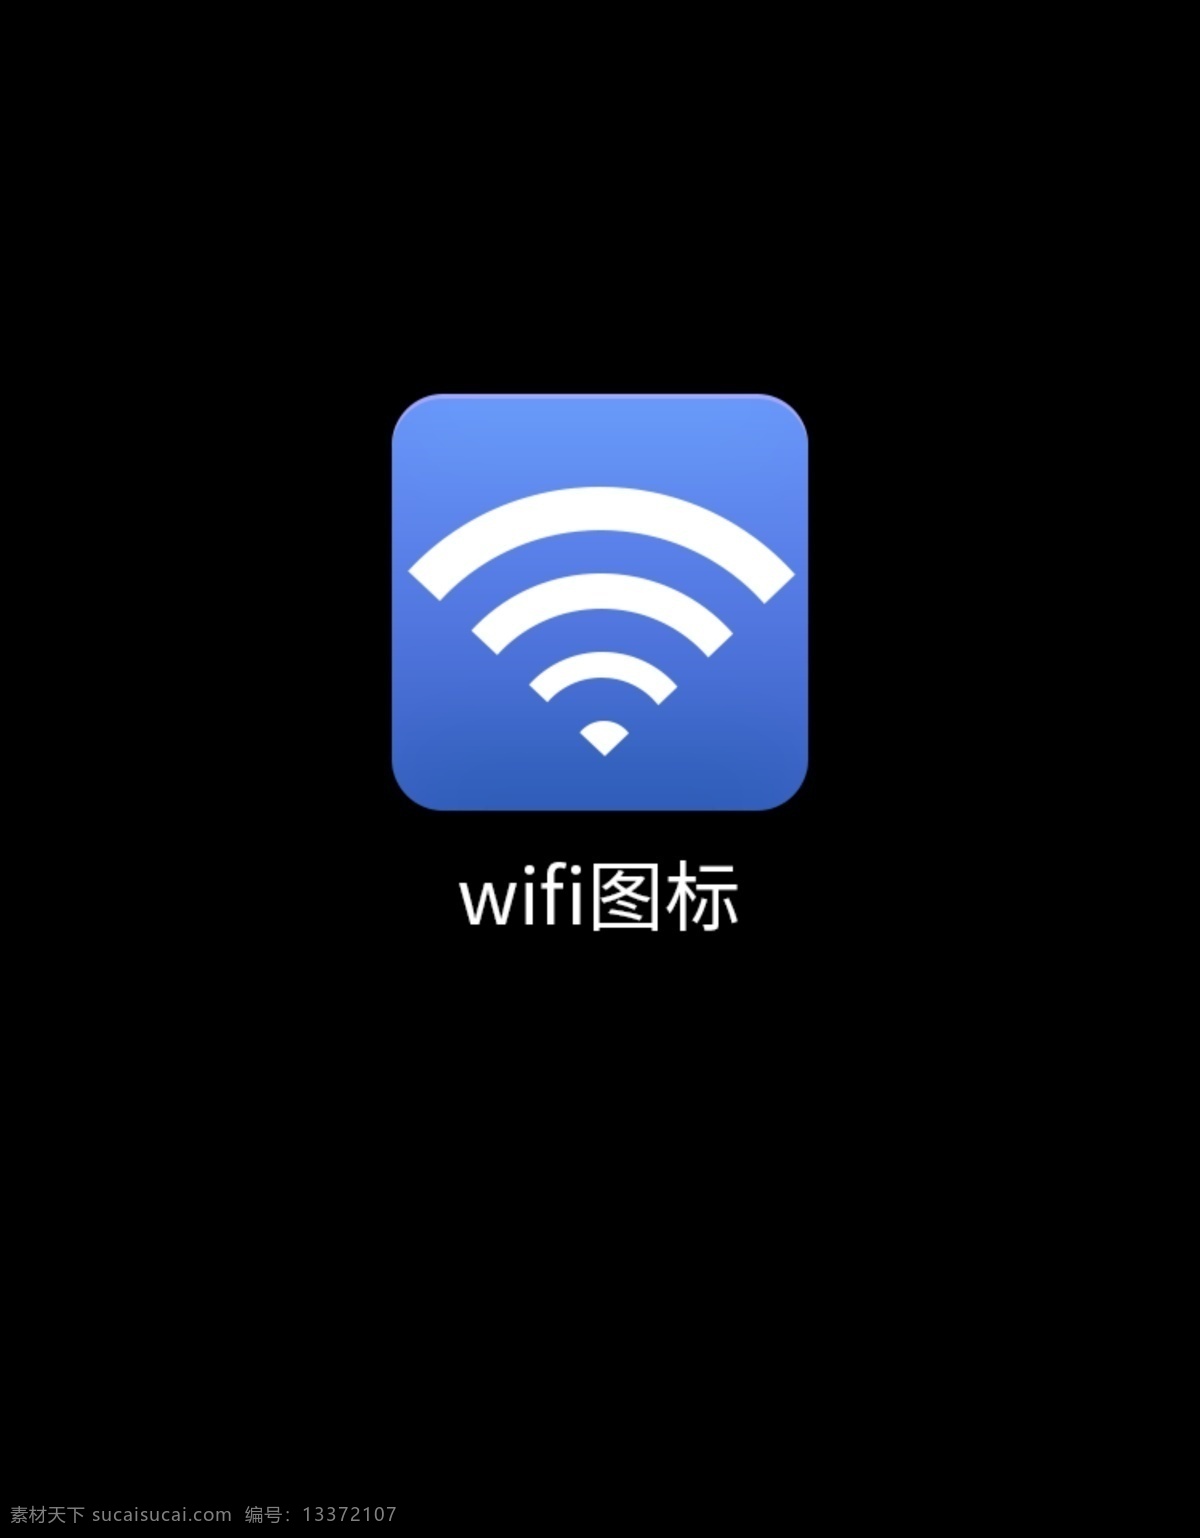 wifi 图标 wifi图标 wifi设计 ps矢量图 流量图标 宽带图标 热点图标 app设计 移动界面设计 图标设计